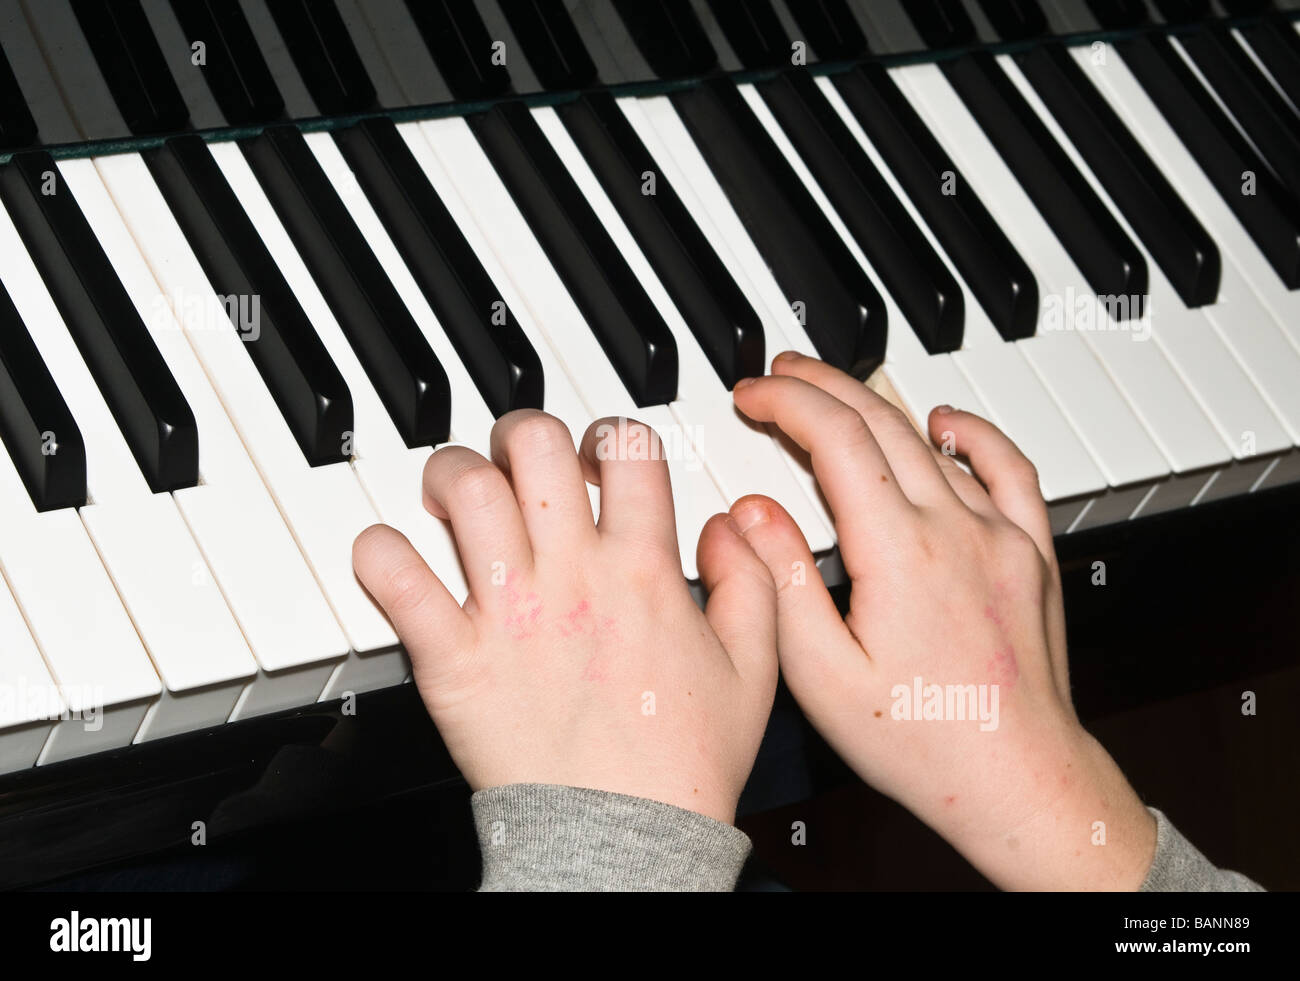 Les petites mains d'enfant jouant du piano keys Banque D'Images